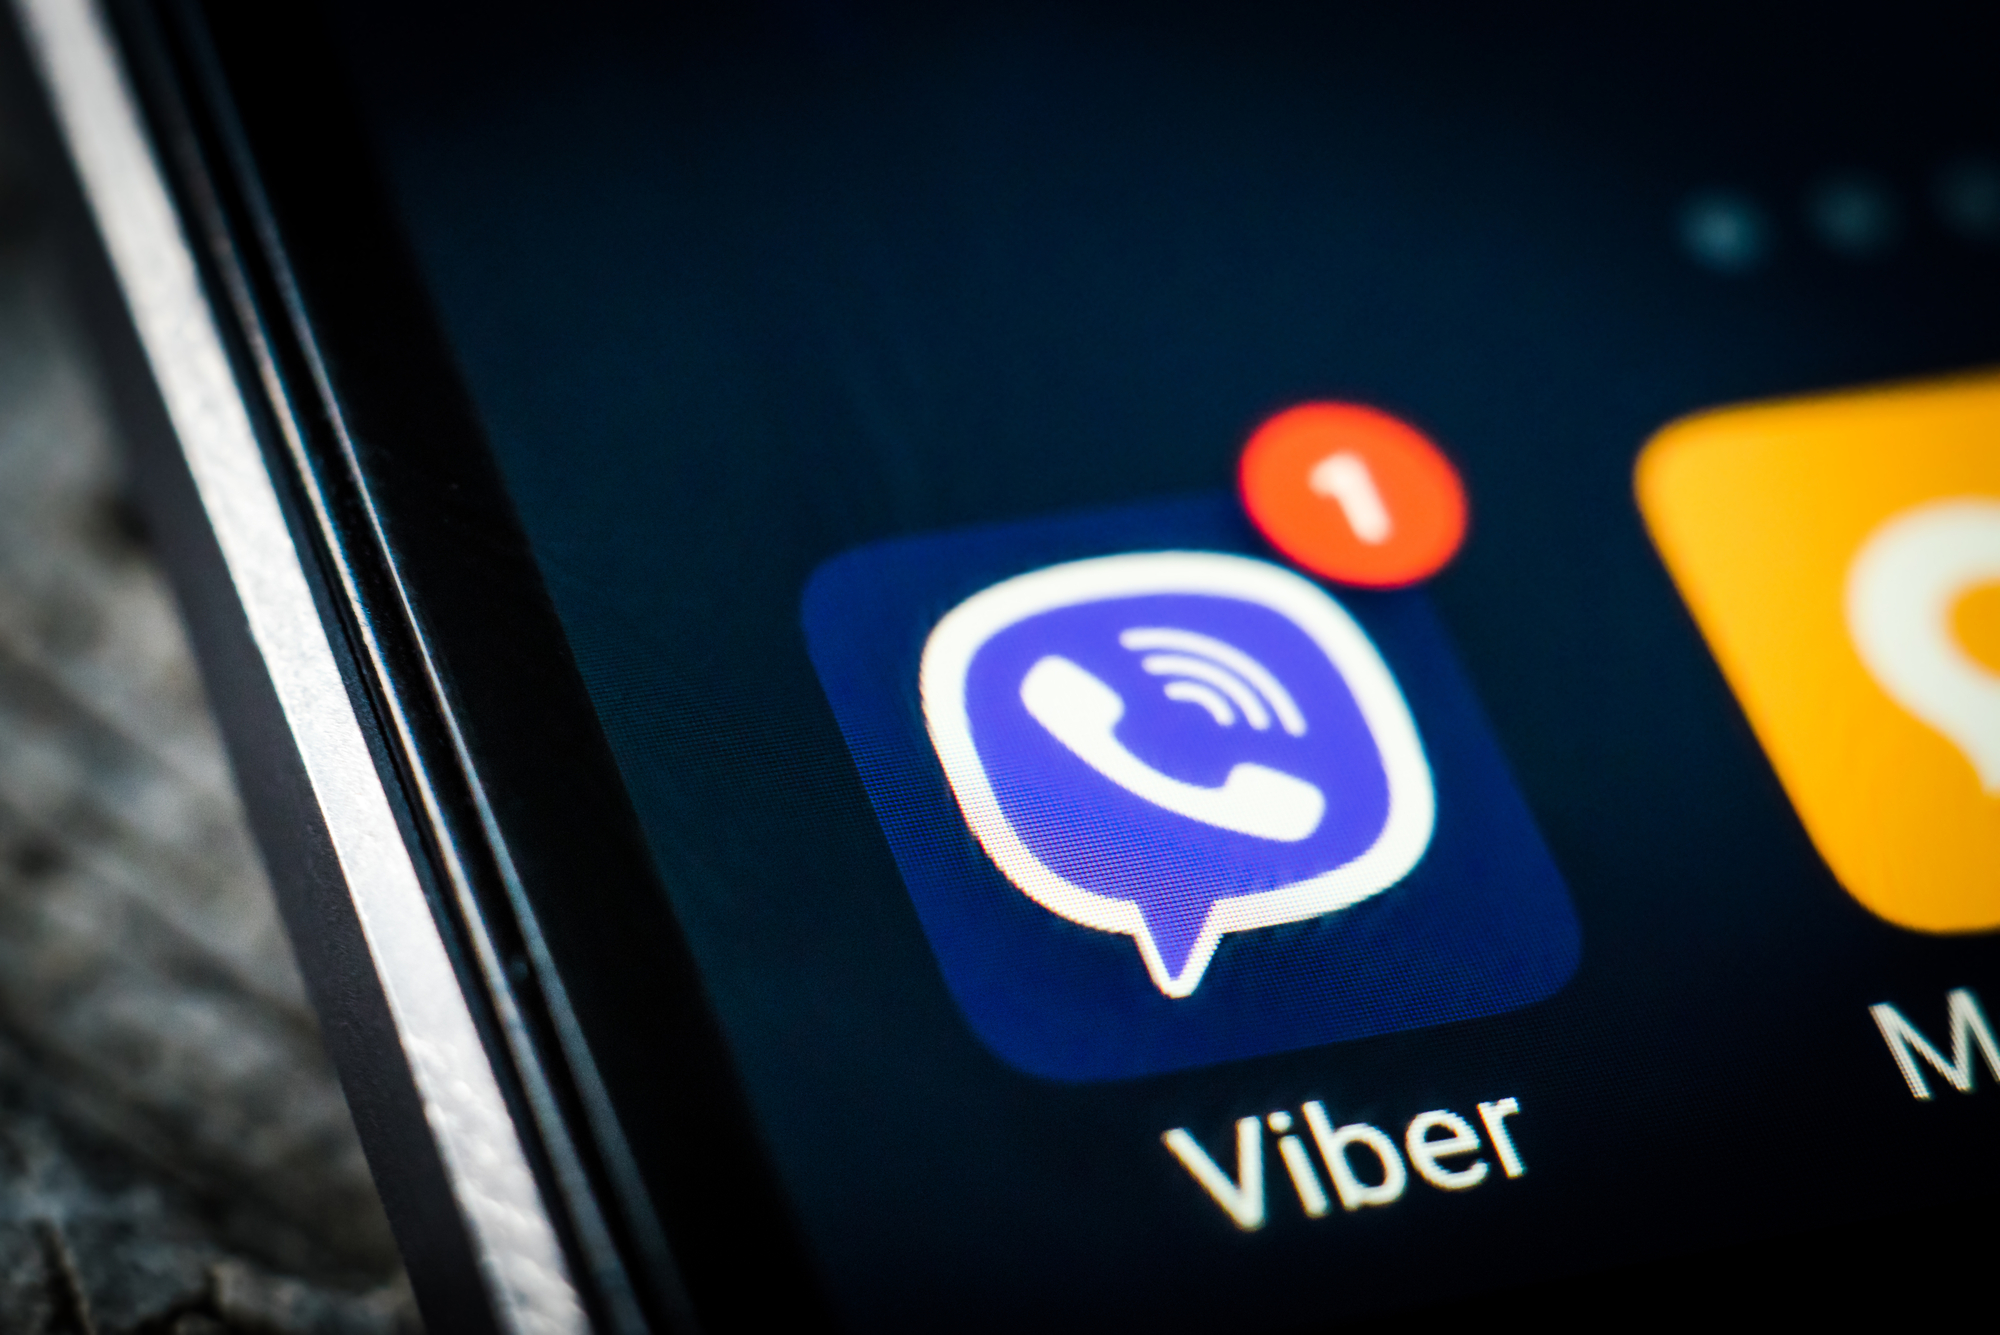 Прикарпатку, яка створила групу у «Viber» з інформацією про роздачу повісток, ув'язнили